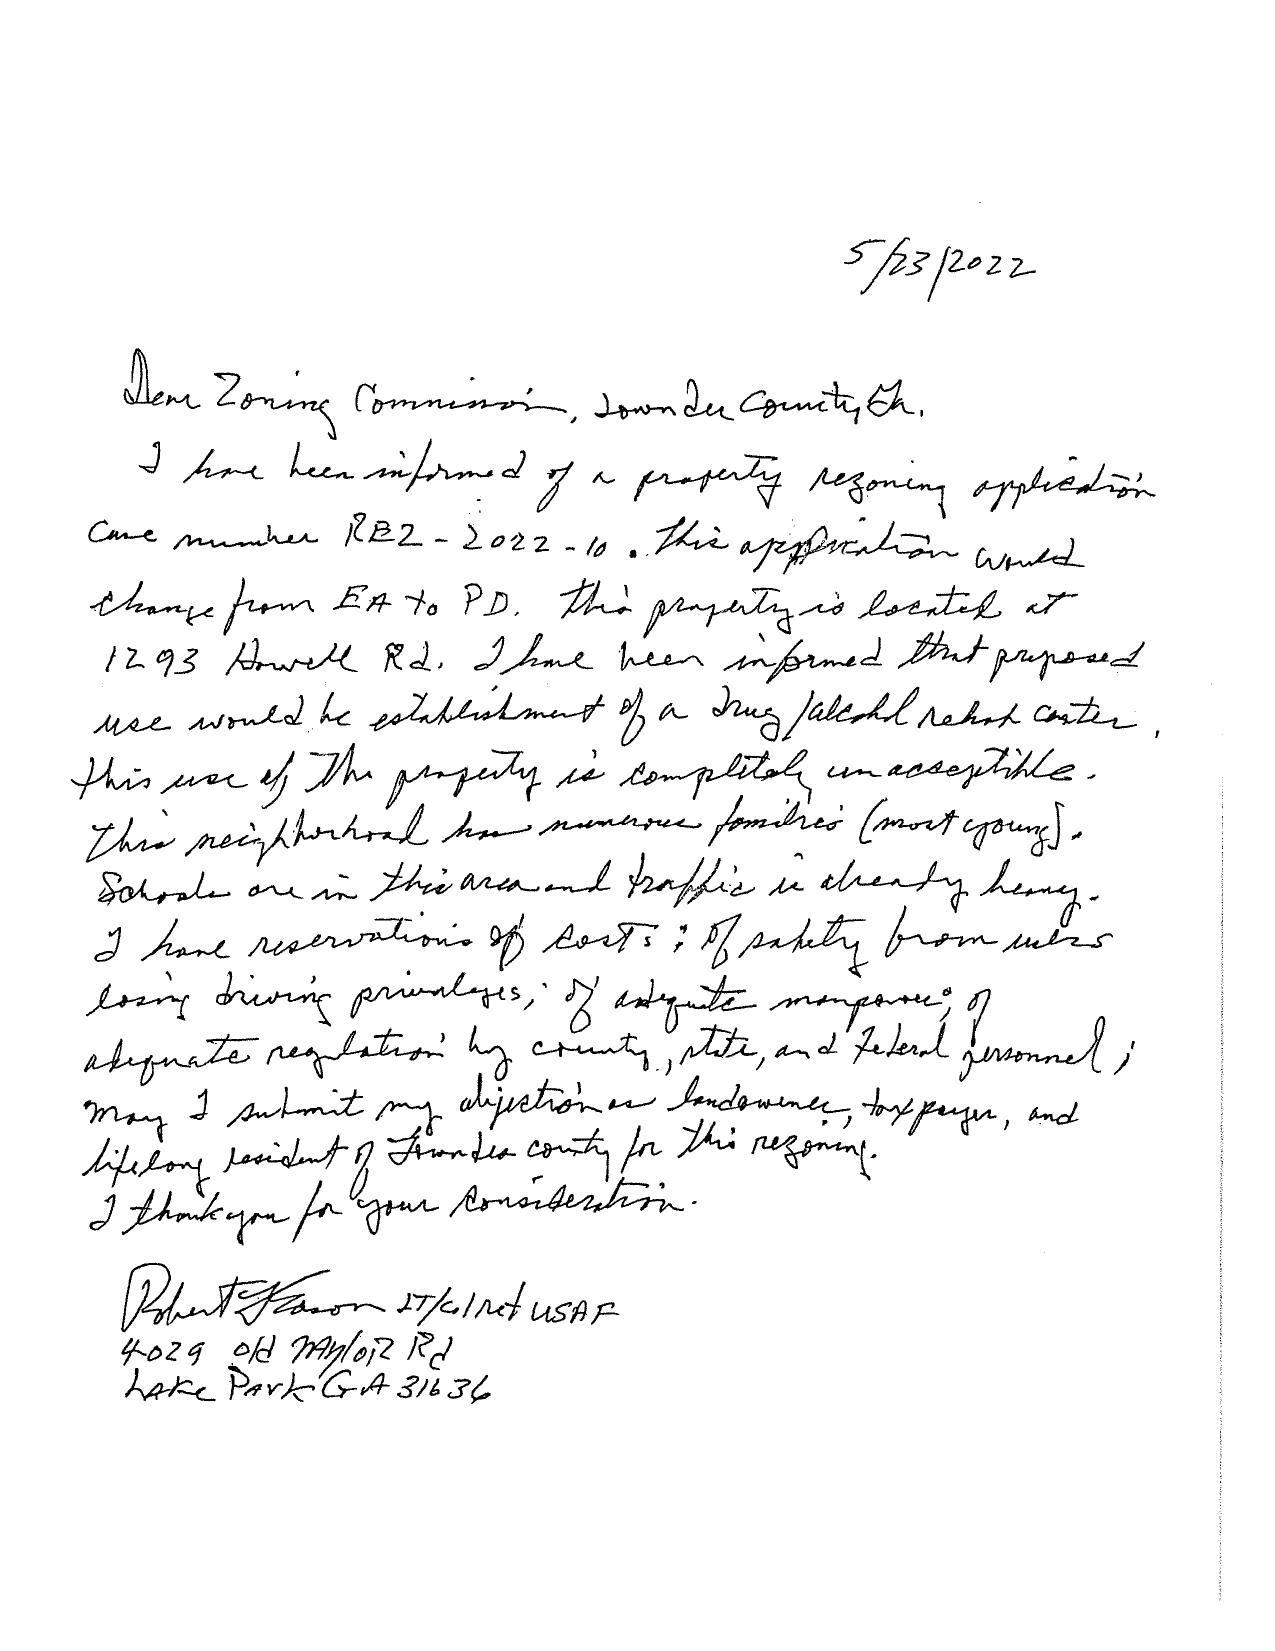 Opposition letter, Robert Eason